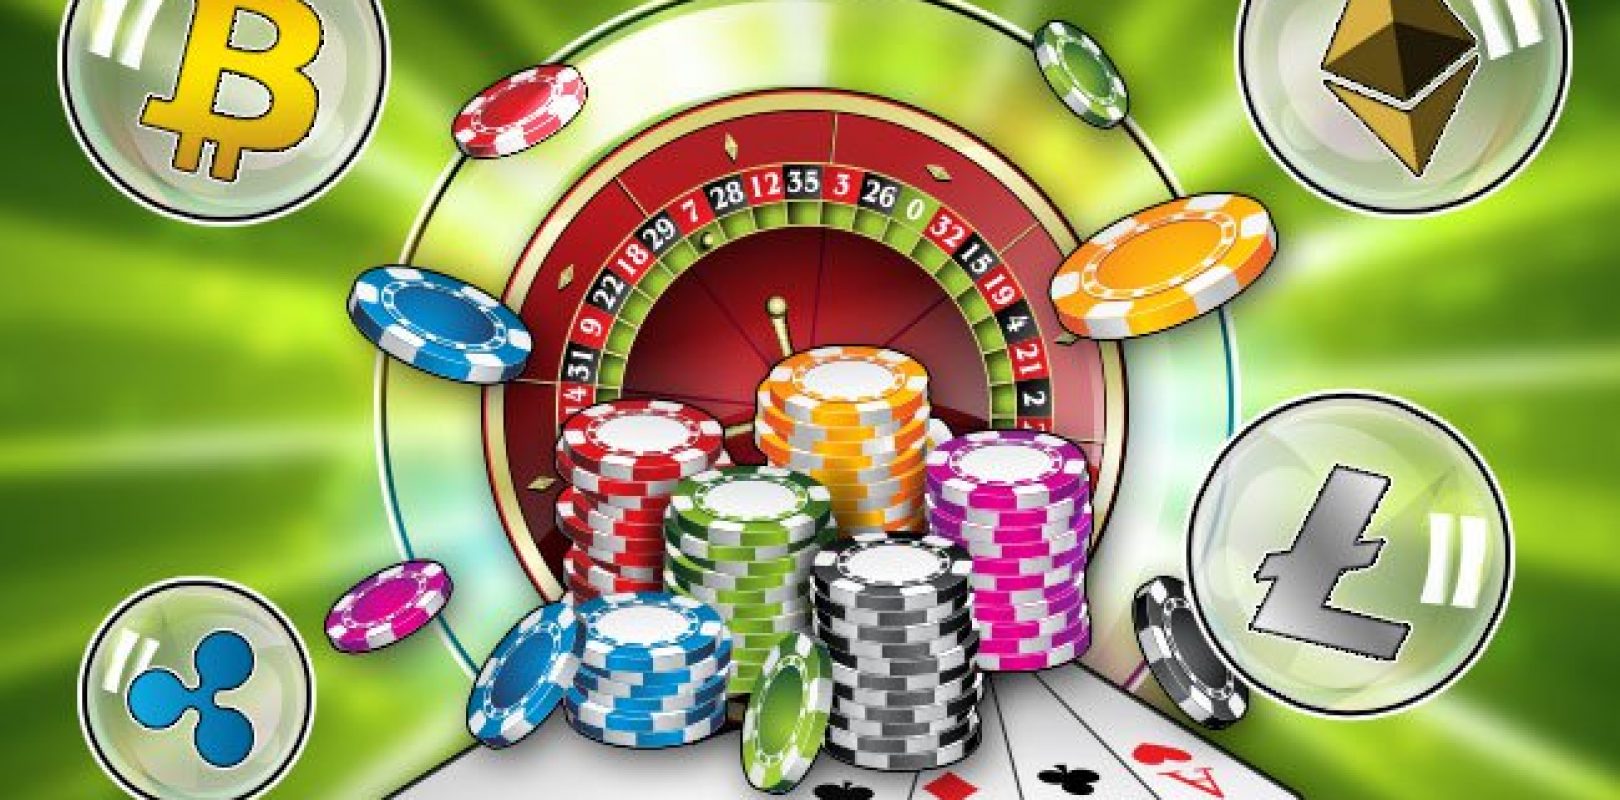 World's best online casino